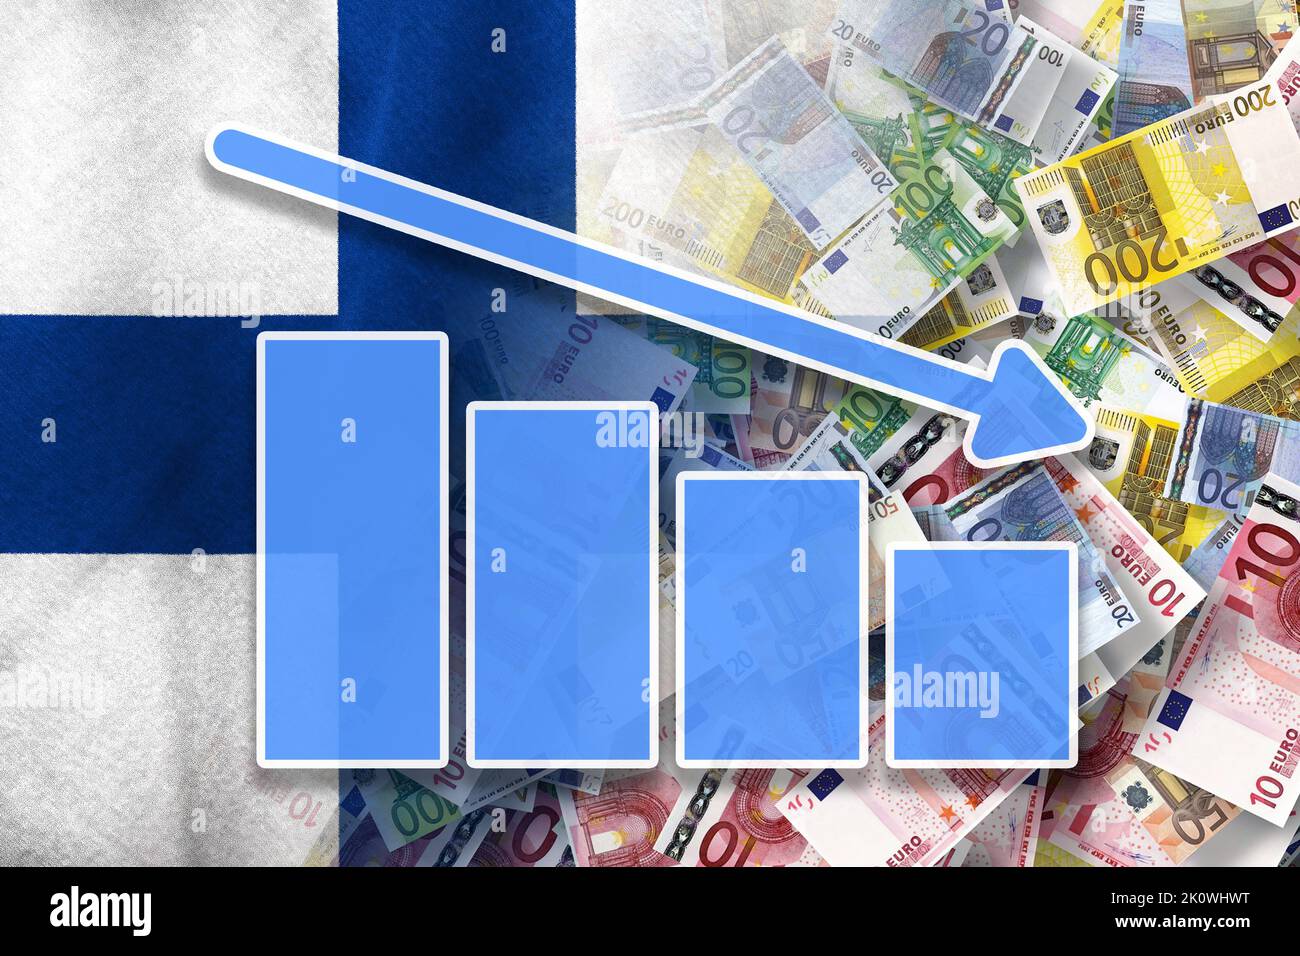 Wirtschaftsdiagramm: Abwärtspfeil, Euro-Cash-Banknoten und Finnland-Flagge (Geld, Wirtschaft, Unternehmen, Finanzen, Krise) Stockfoto